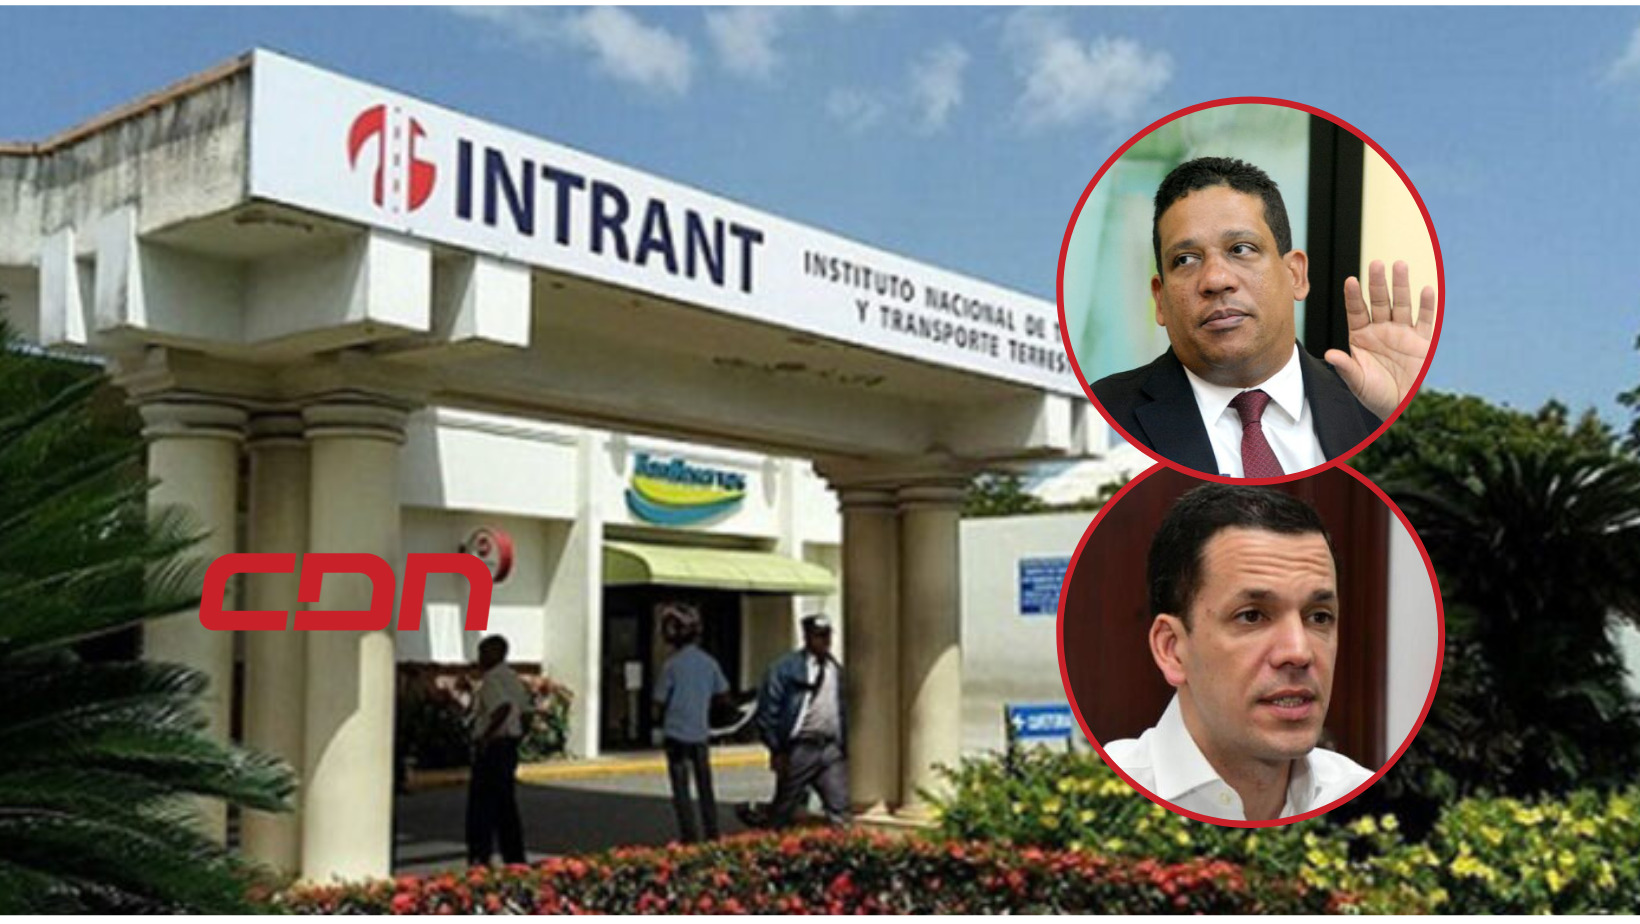 Carlos Pimentel remite al Ministerio Público irregularidades en licitación del Intrant